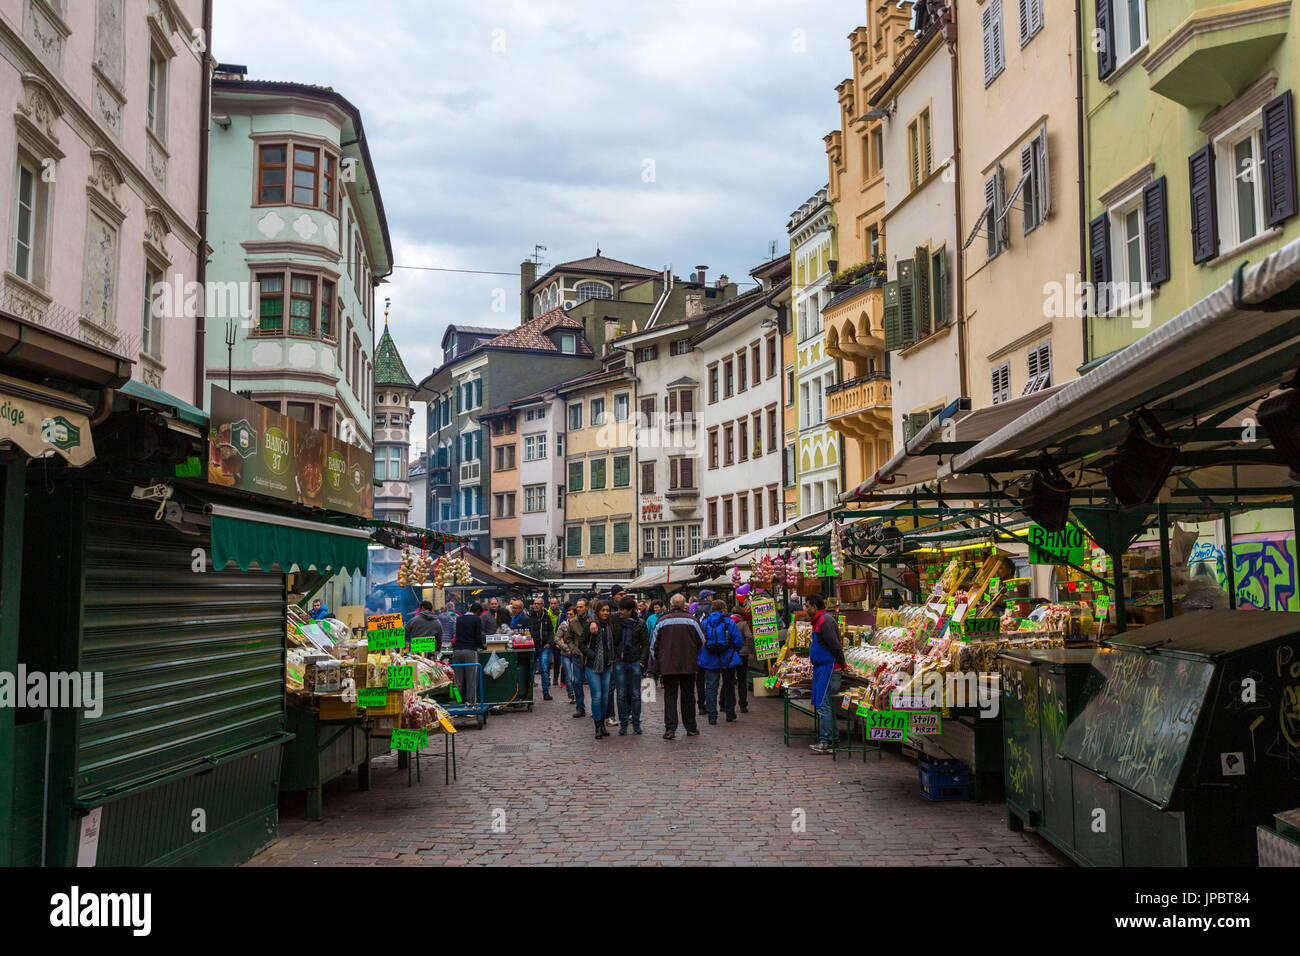 Le persone al centro della città mercato di frutta e verdura. Obstmarkt Square, Bolzano, Trentino Alto Adige - Sudtirol, Italia, Europa. Foto Stock